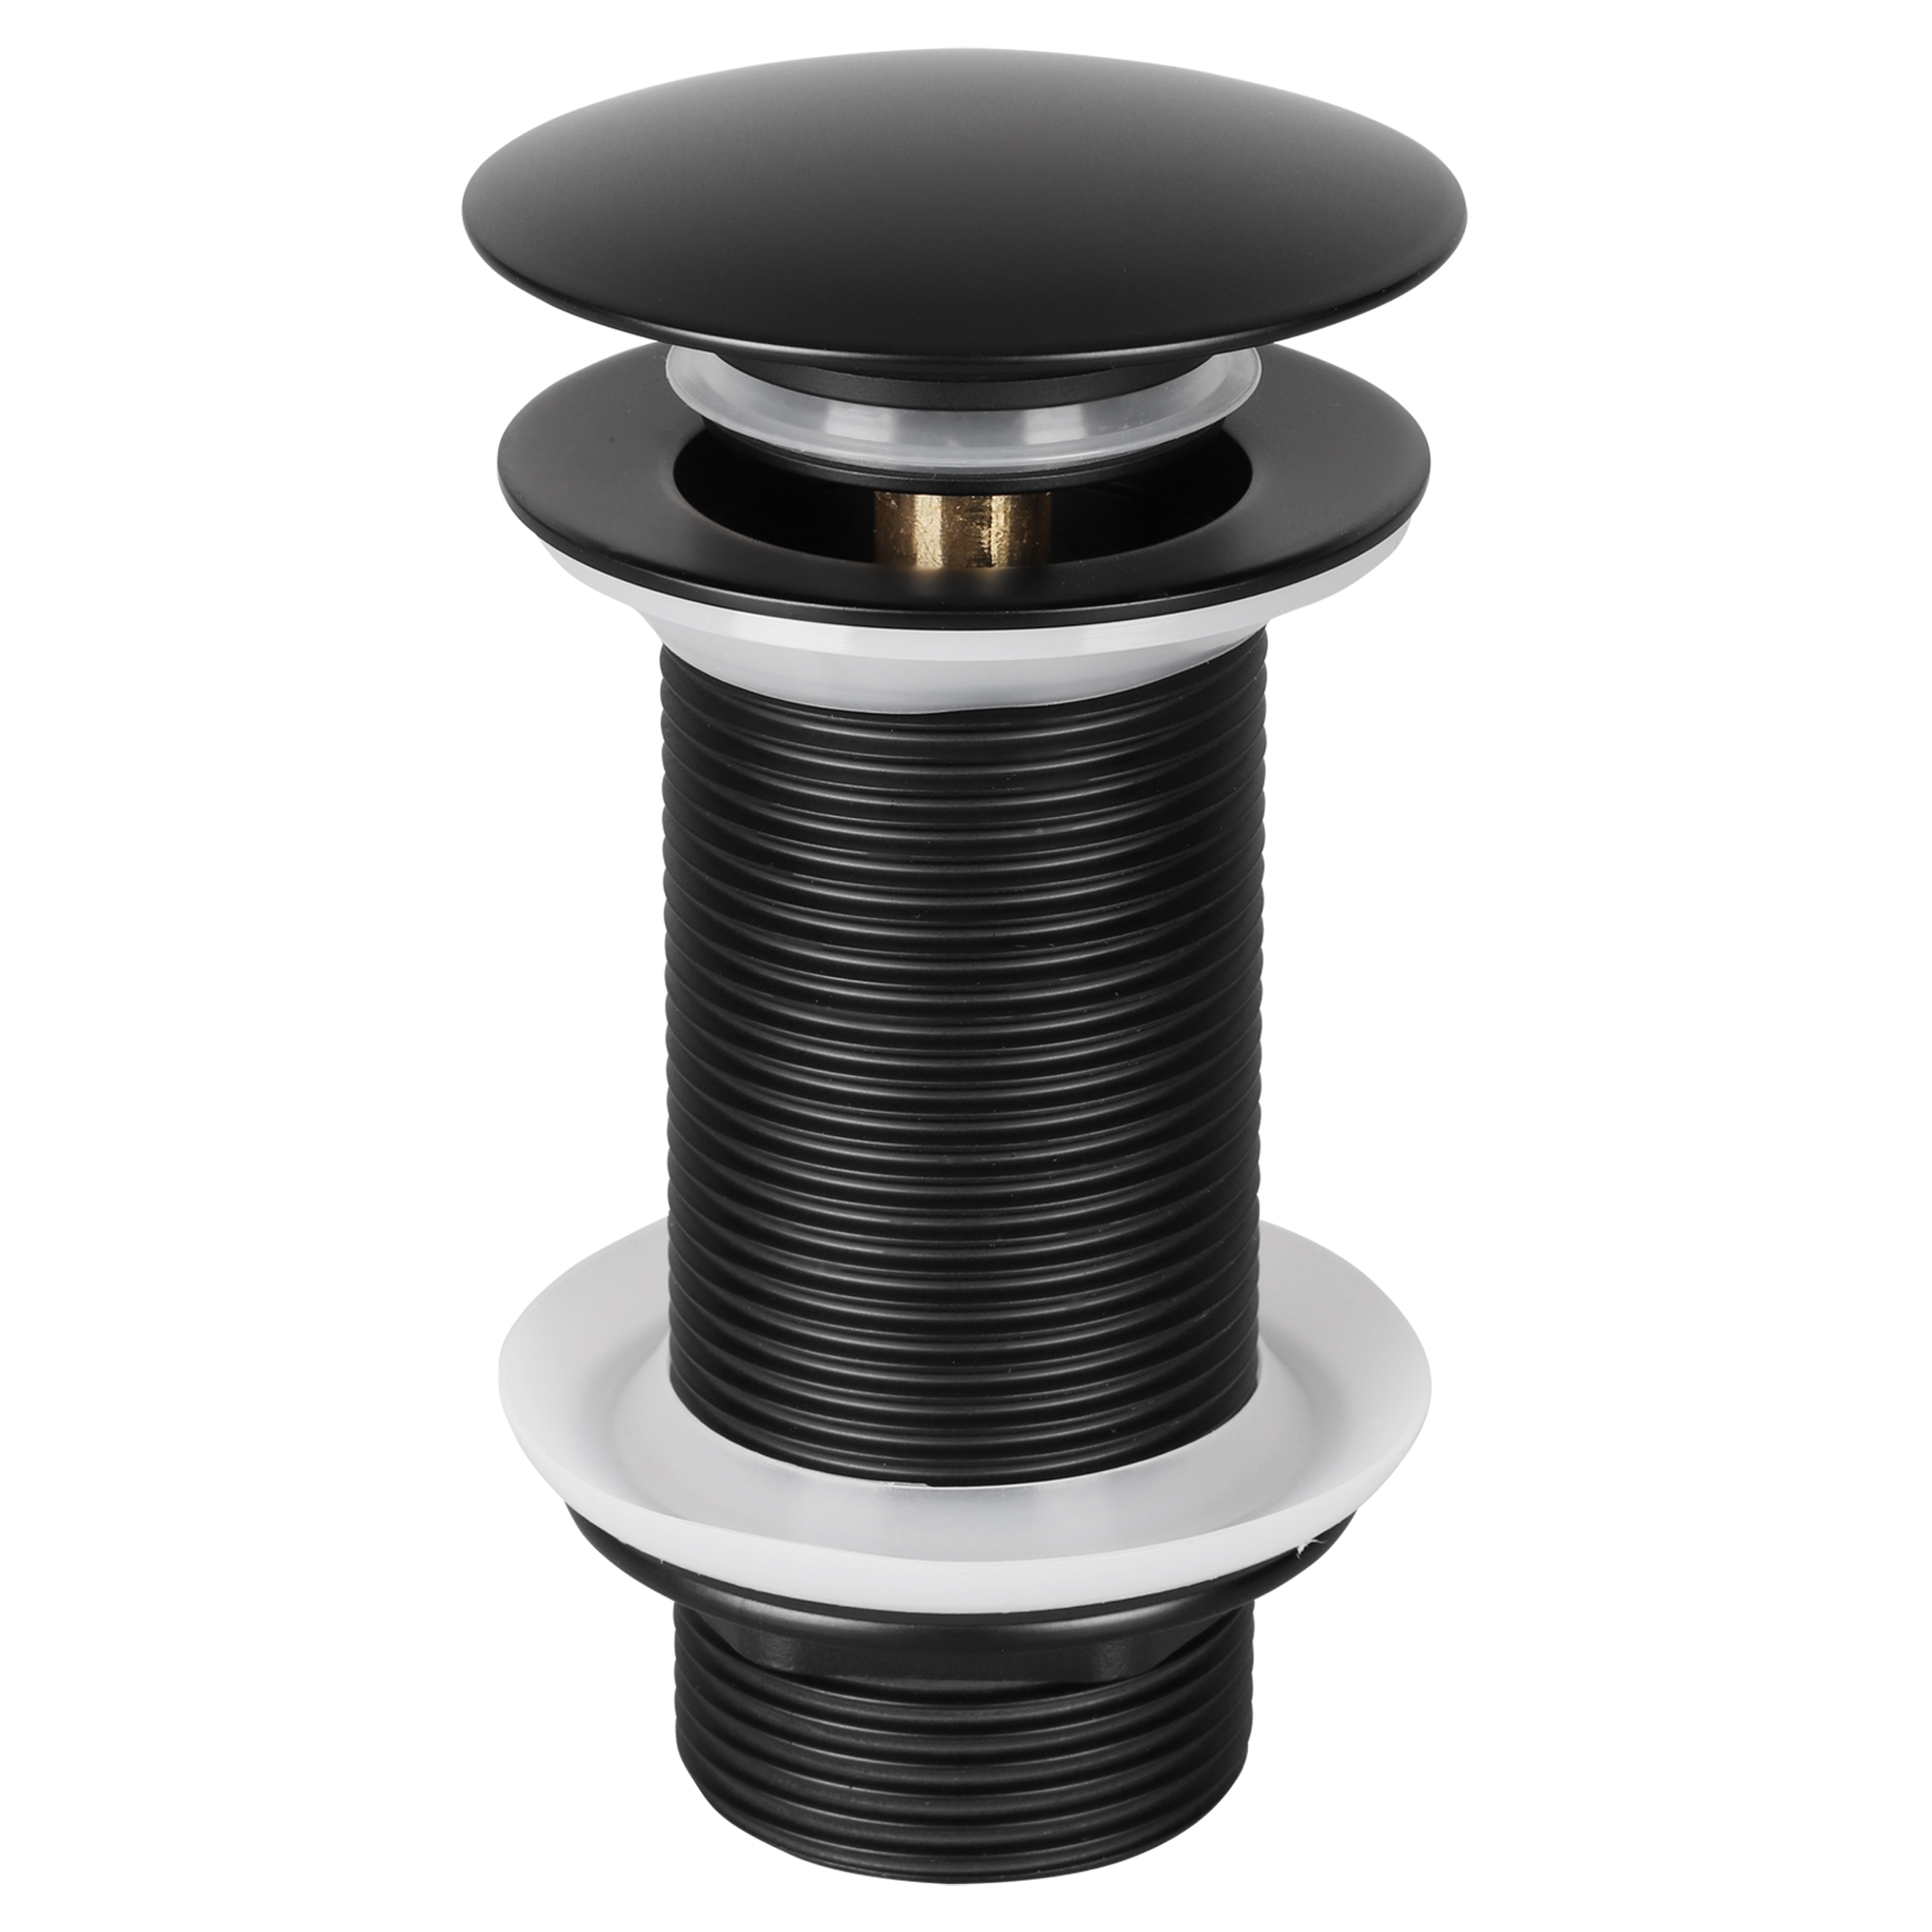 30.415.82 Differnz  afvoerplug pop up - design - large - Ø 66 mm x 98 mm - zwart